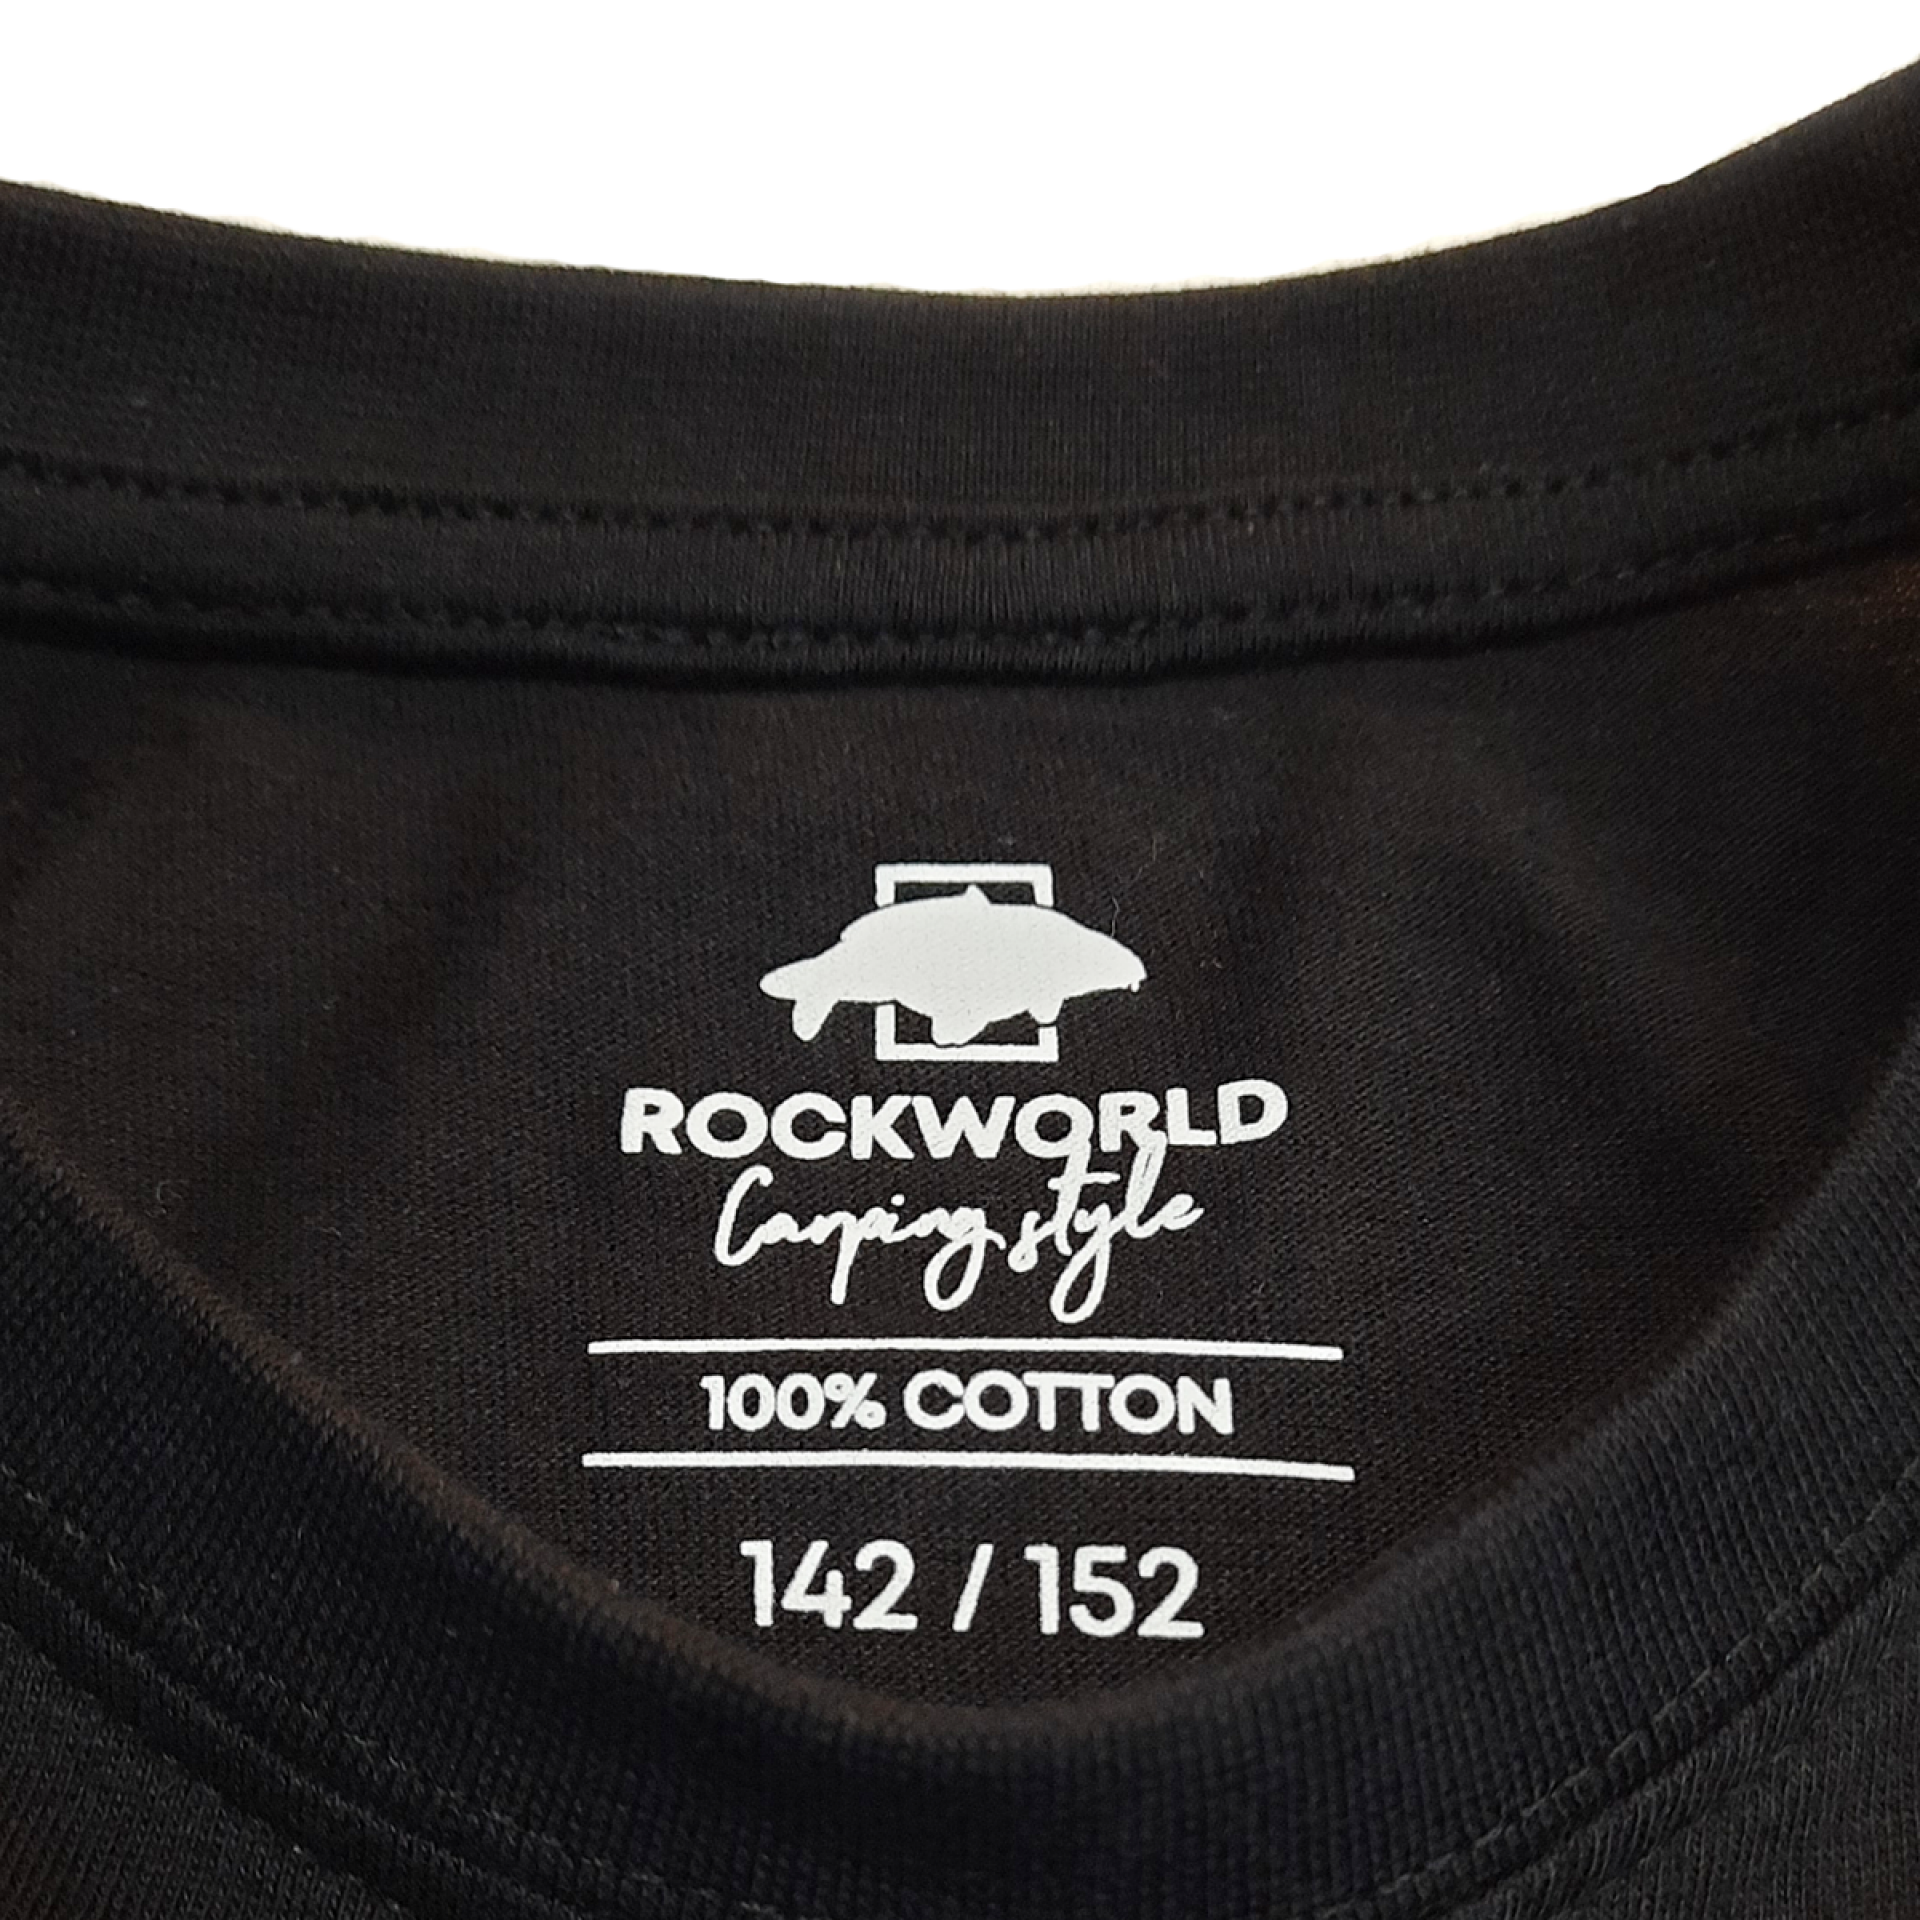 Rockworld Carping Style - Maglietta nera per bambini